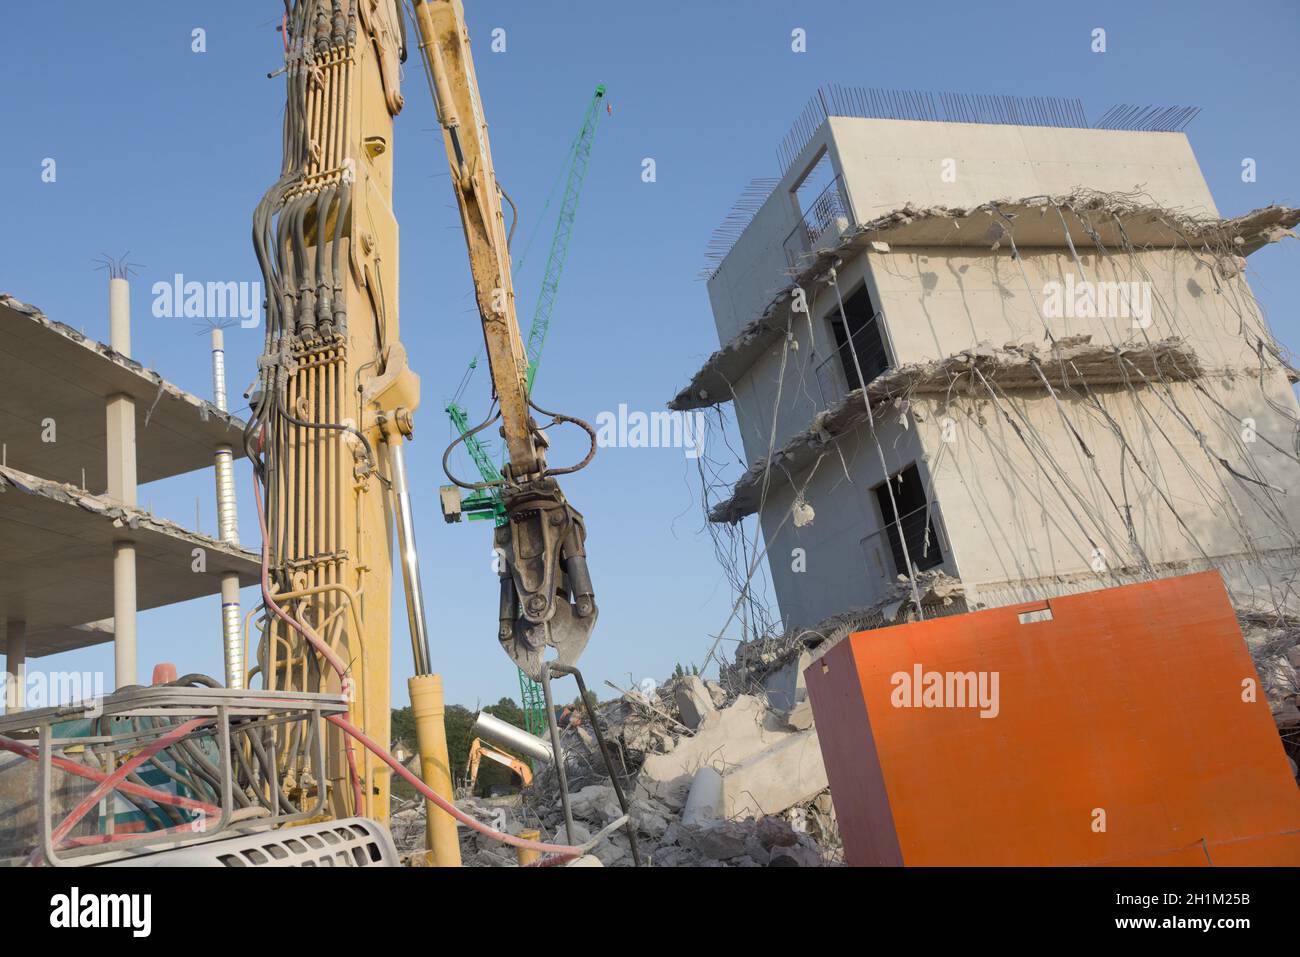 Betonschutt und hängende Stahlseile auf dieser Abrissstelle, großer, hoch reichender Abrissbagger im Vordergrund, mit Turmkran dahinter Stockfoto